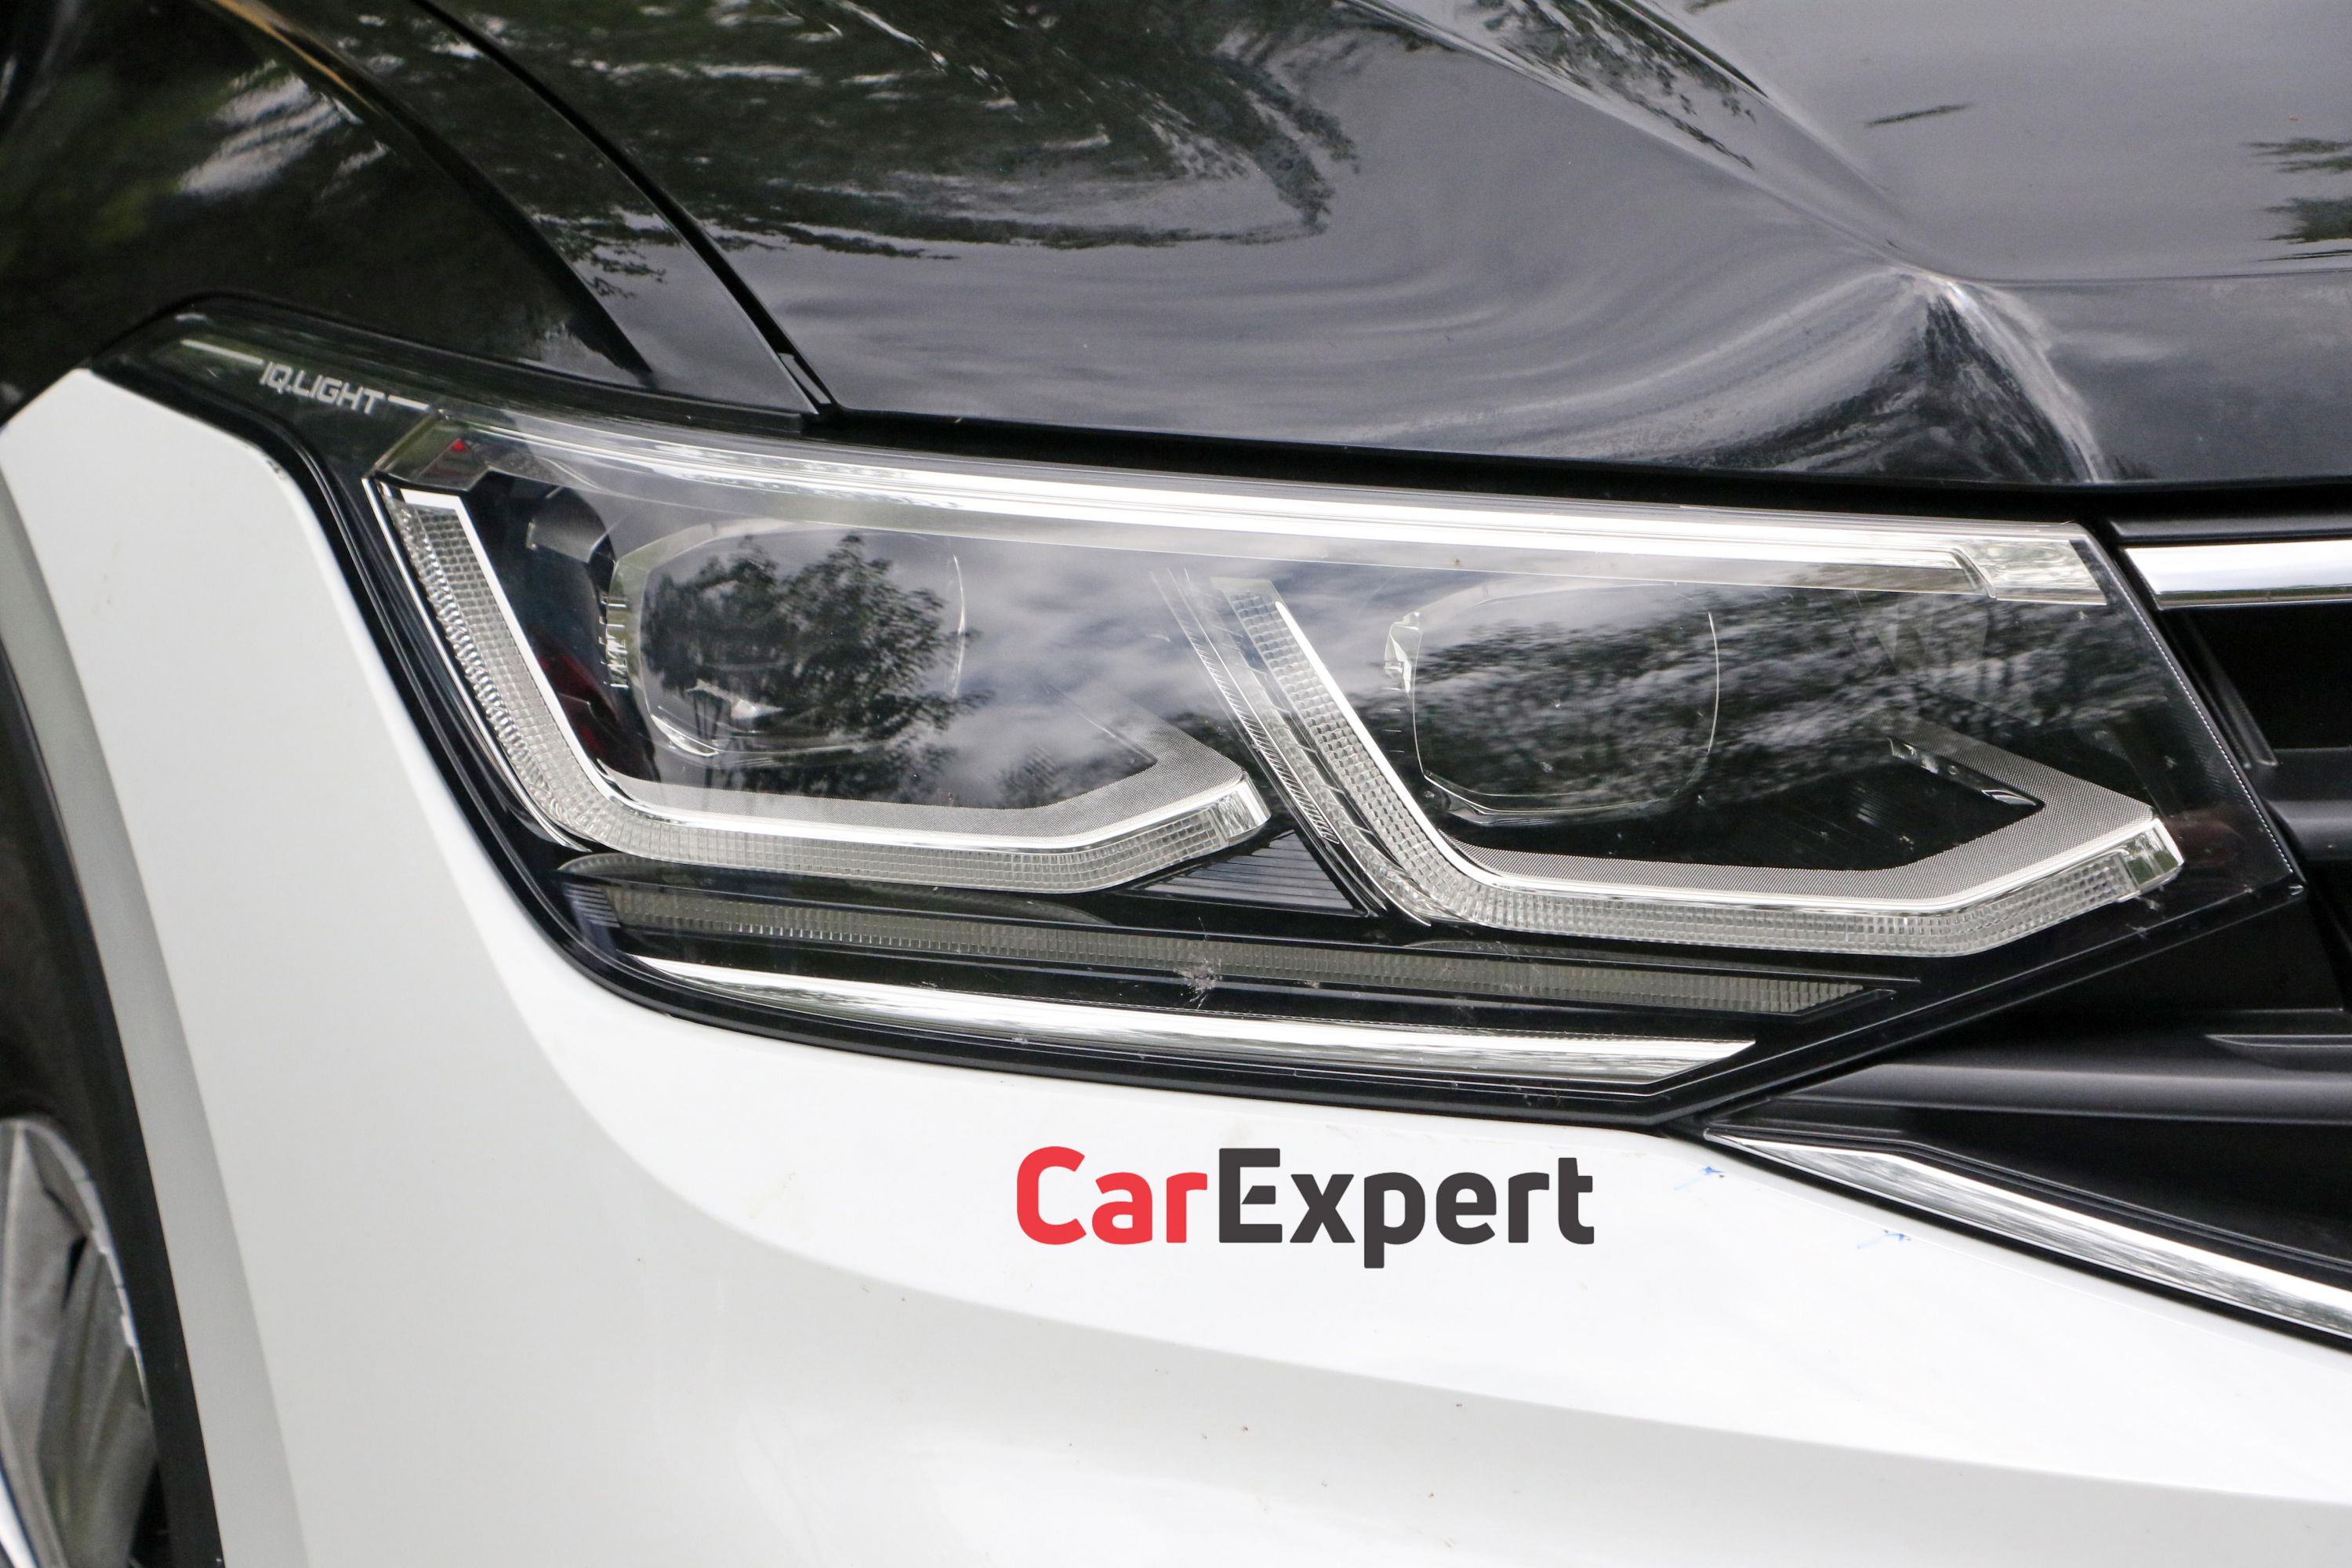 2021 Volkswagen Tiguan spied | CarExpert